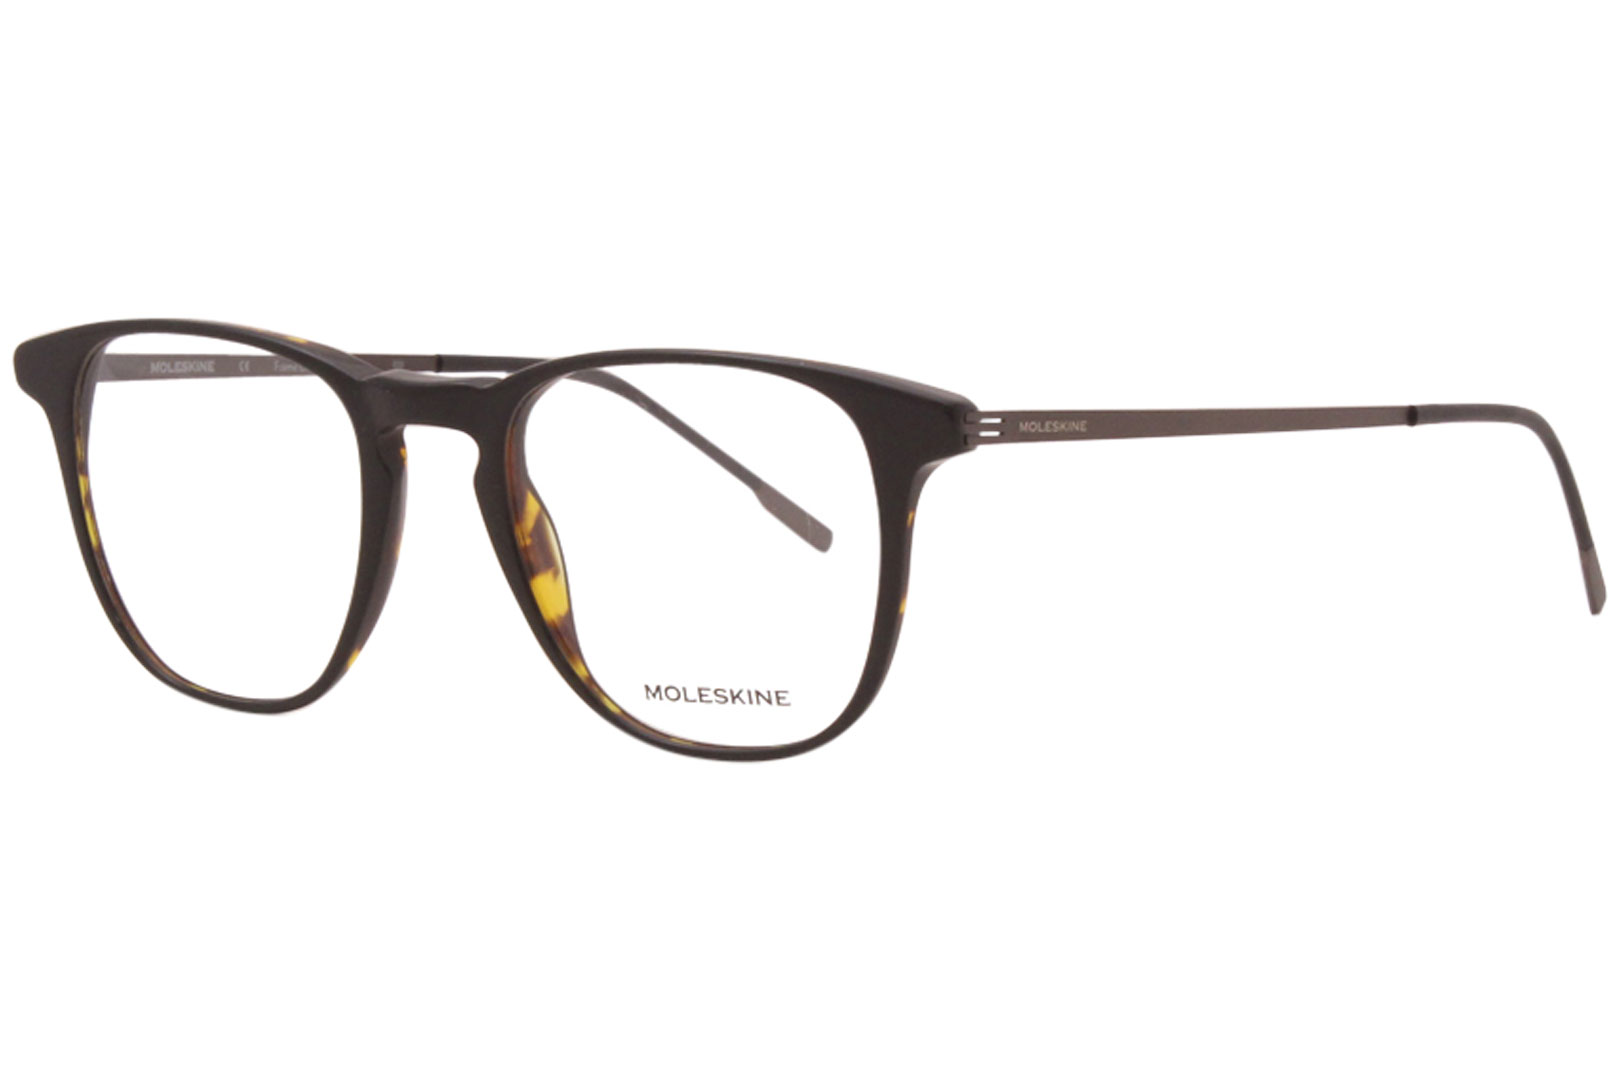 Moleskine MO1143 Eyeglasses Men's Full Rim Round Optical Frame ...